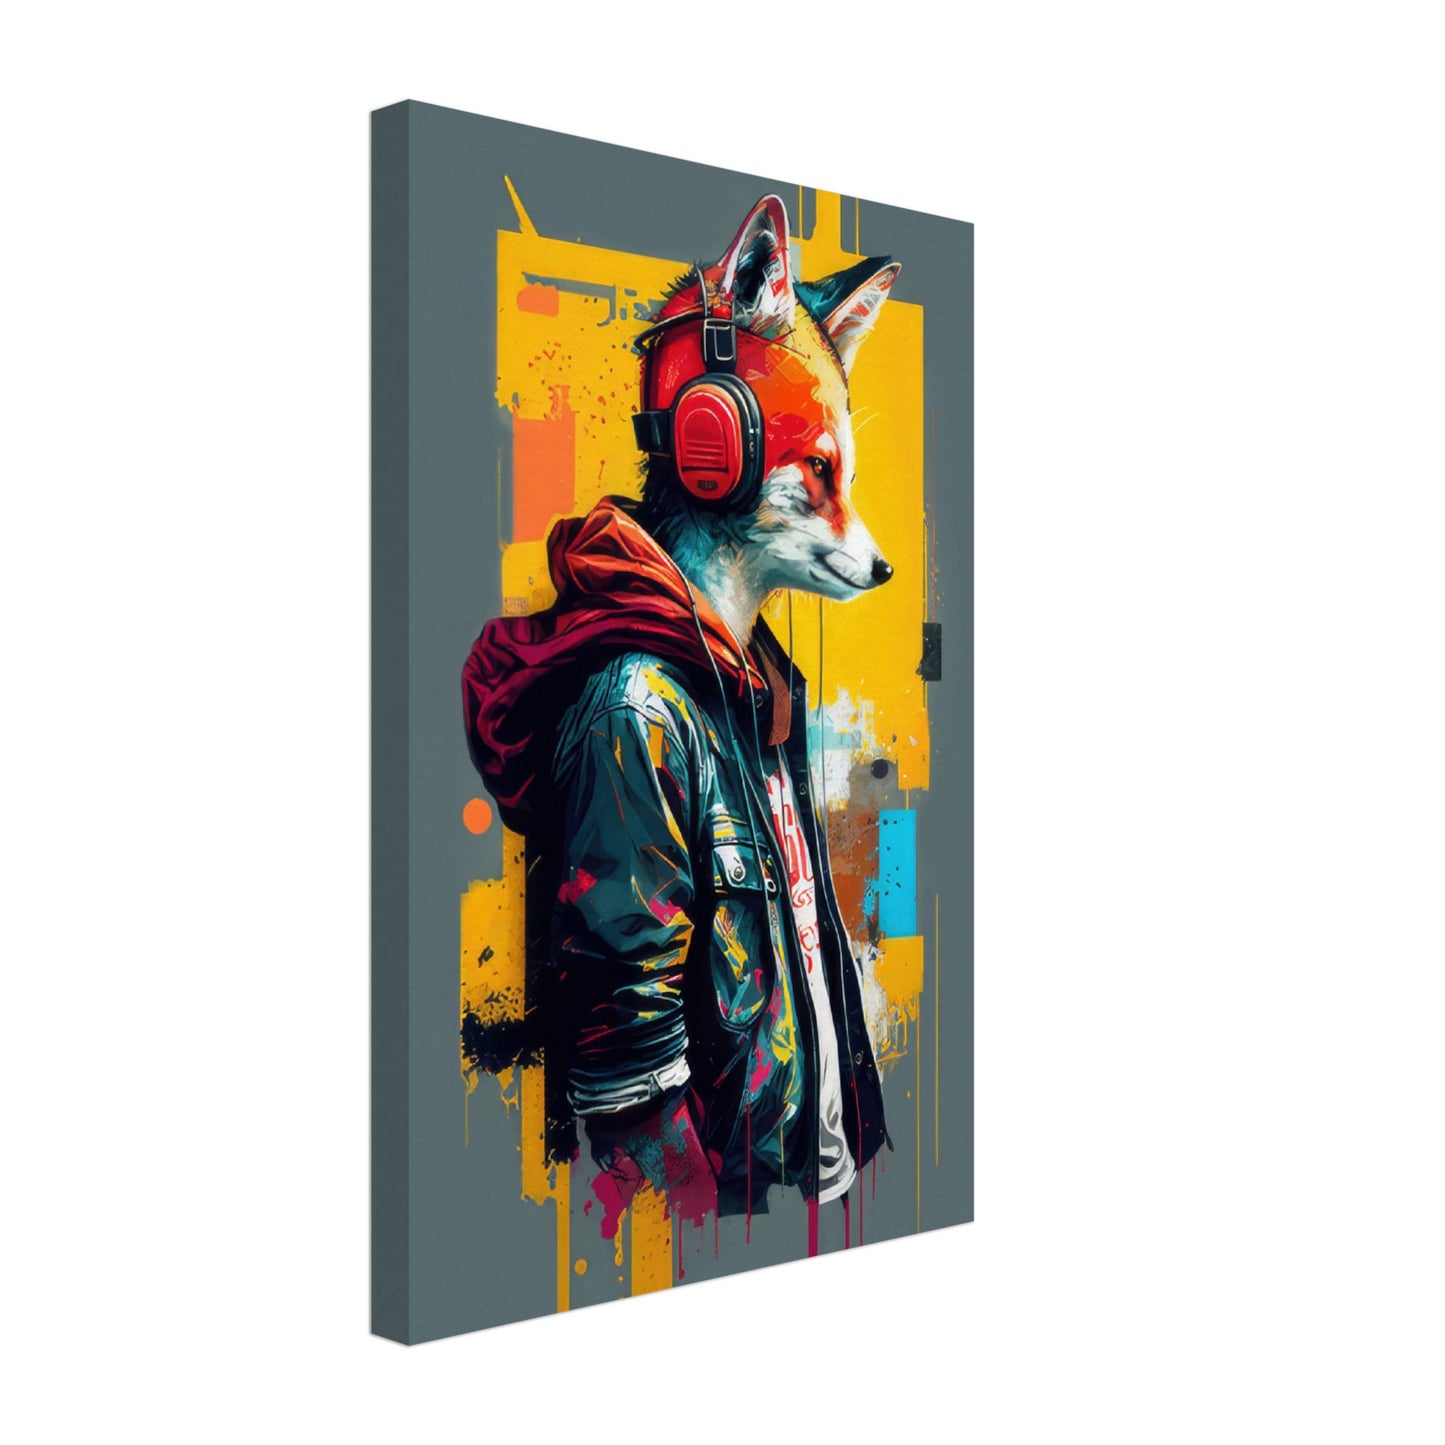 Happy Hues - Füchse Wandbild - Crazy Wildlife Leinwand ColorWorld im Hochformat - Coole Tiere & Animals Kunstdruck